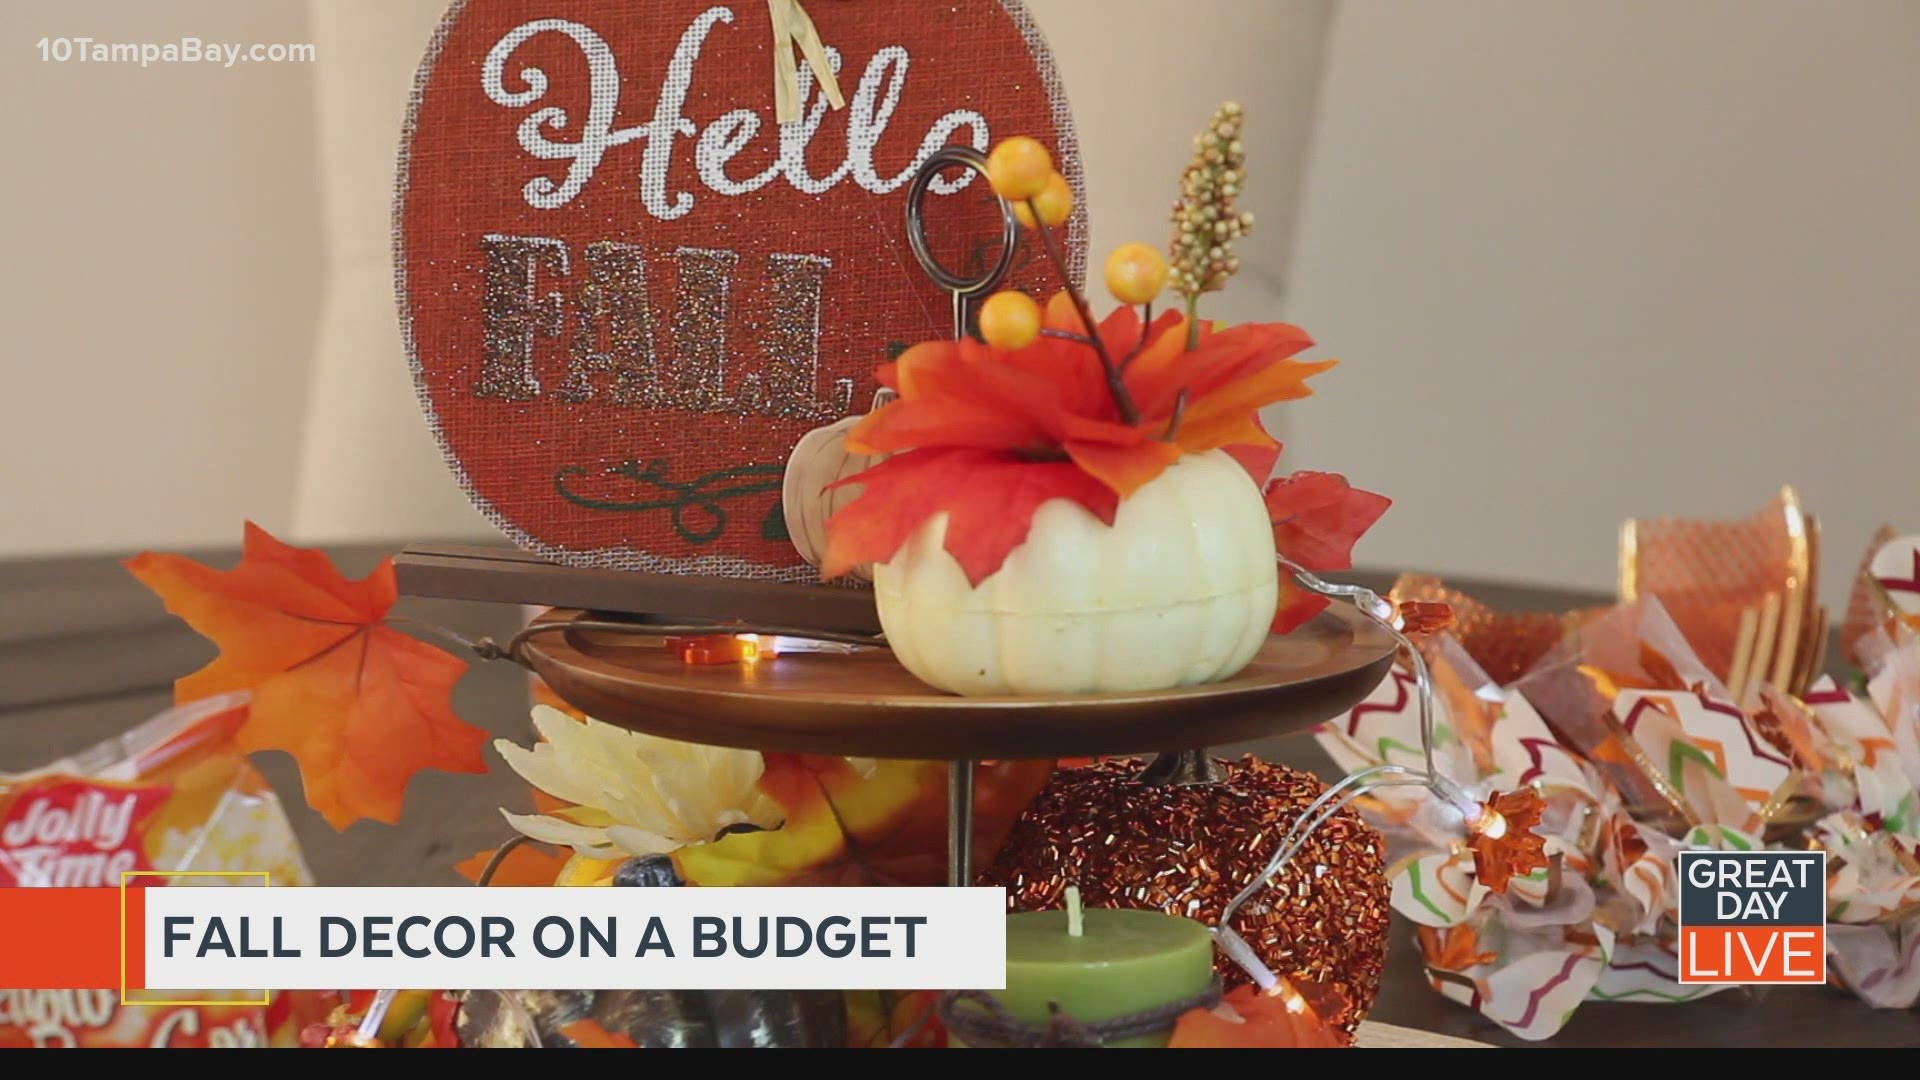 Fall décor on a budget